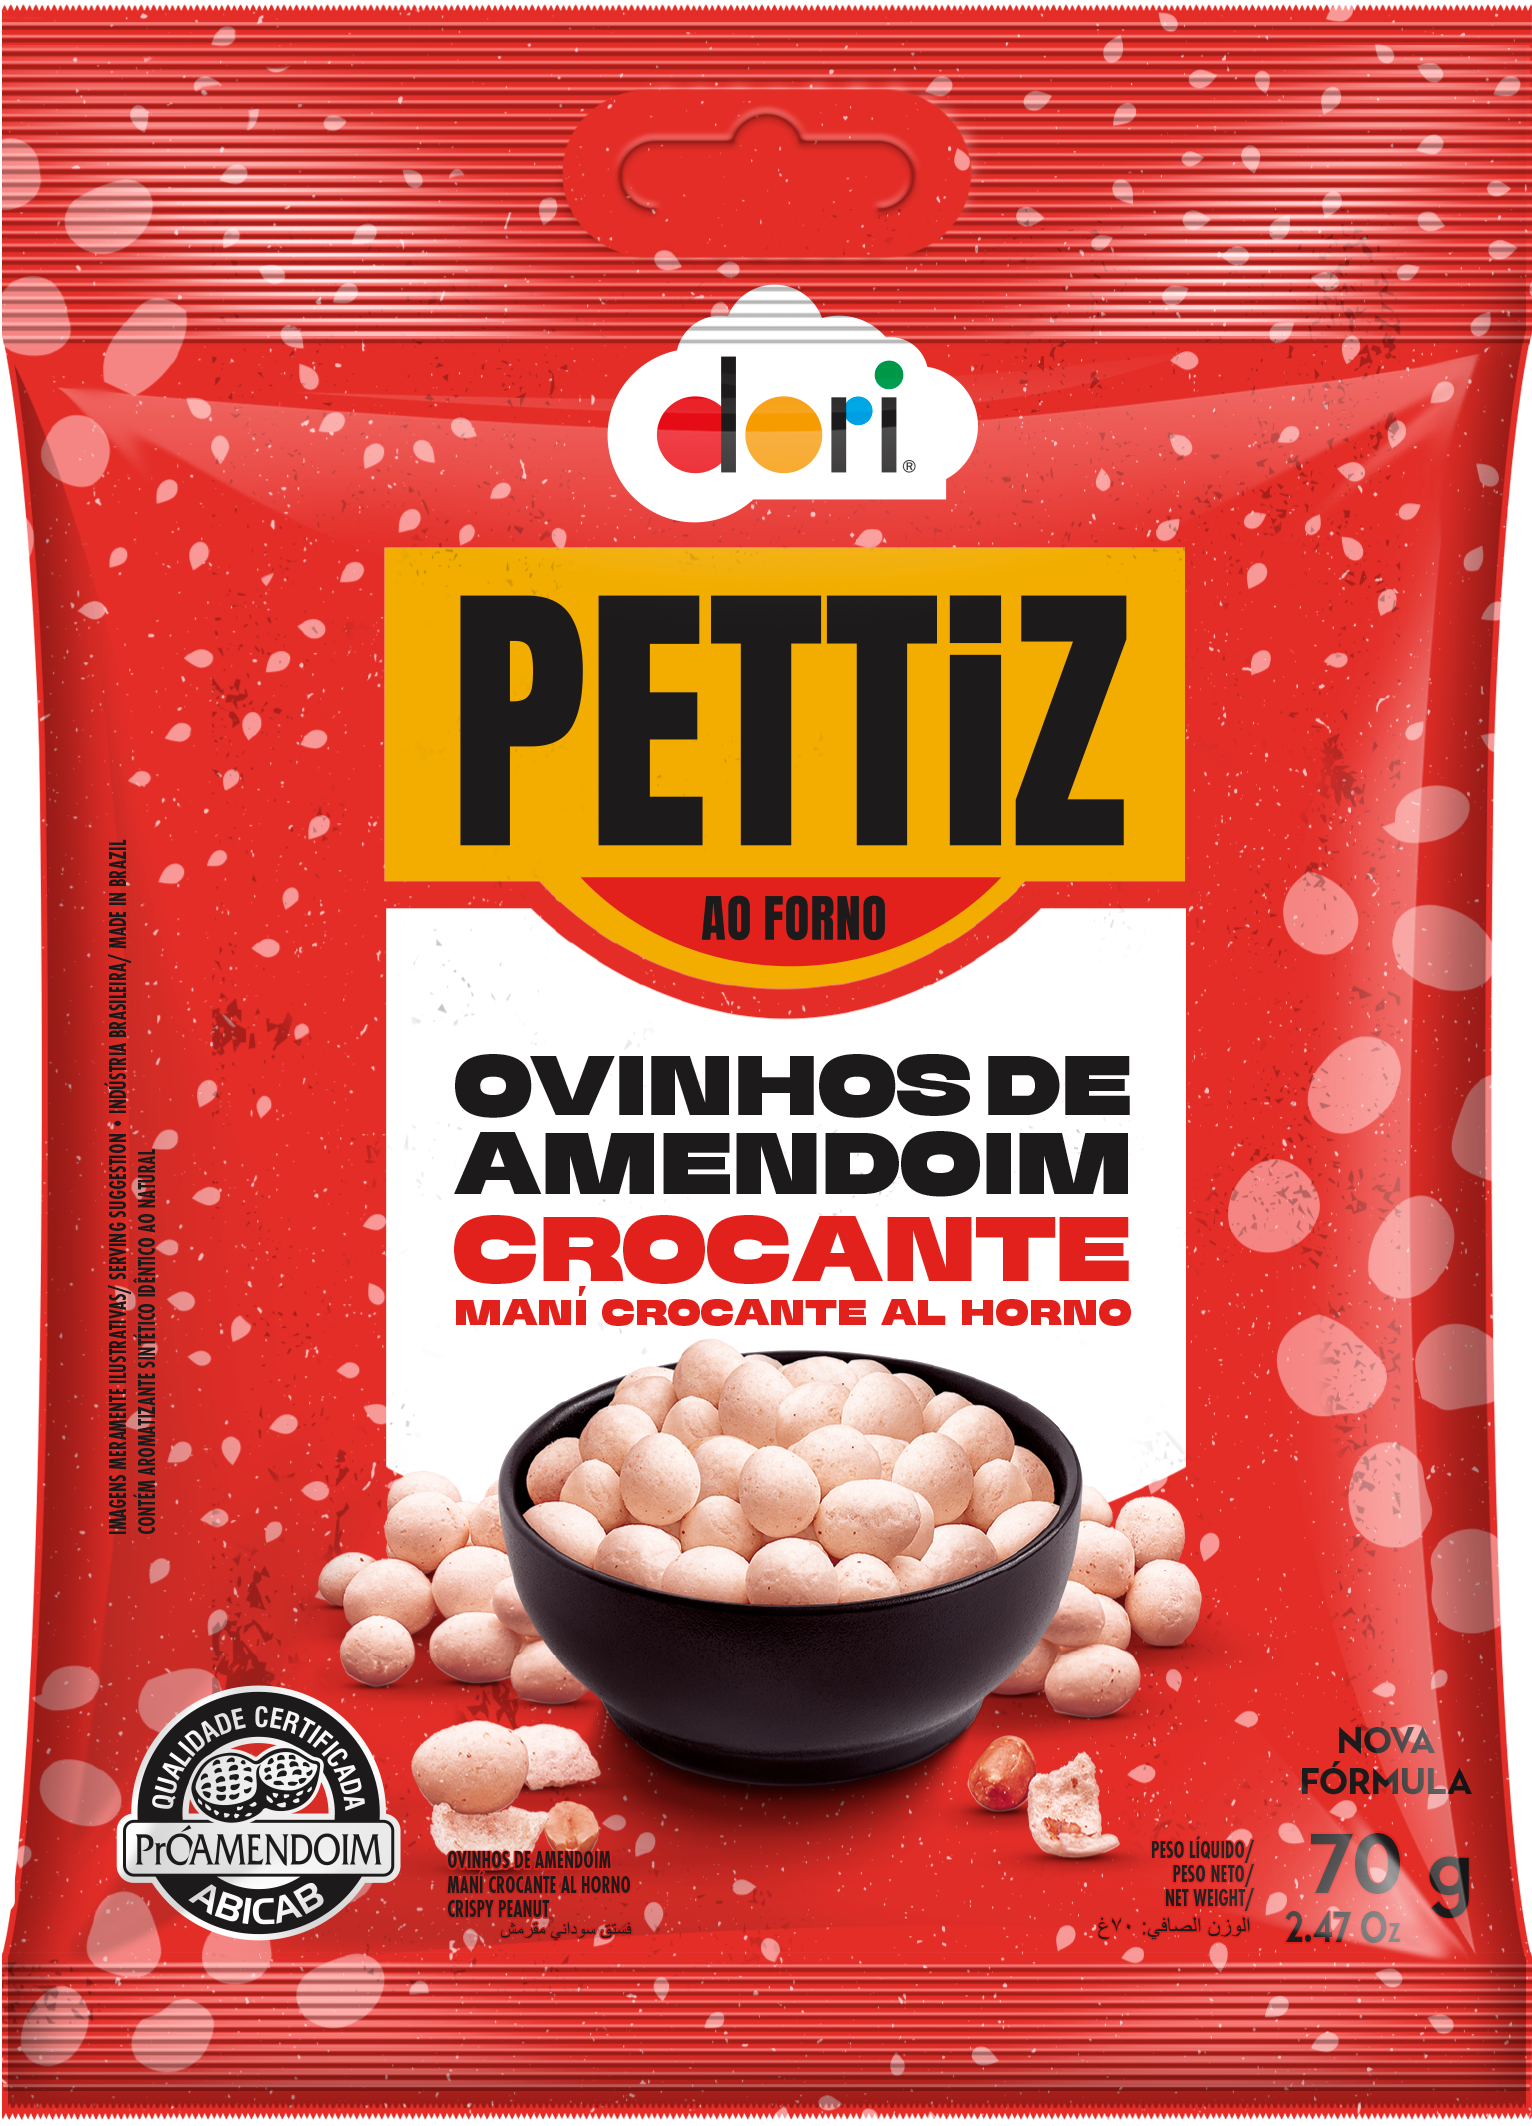 https://dori.com.br/wp-content/uploads/2022/09/Pettiz-Ovinhos-de-Amendoim-90g.png